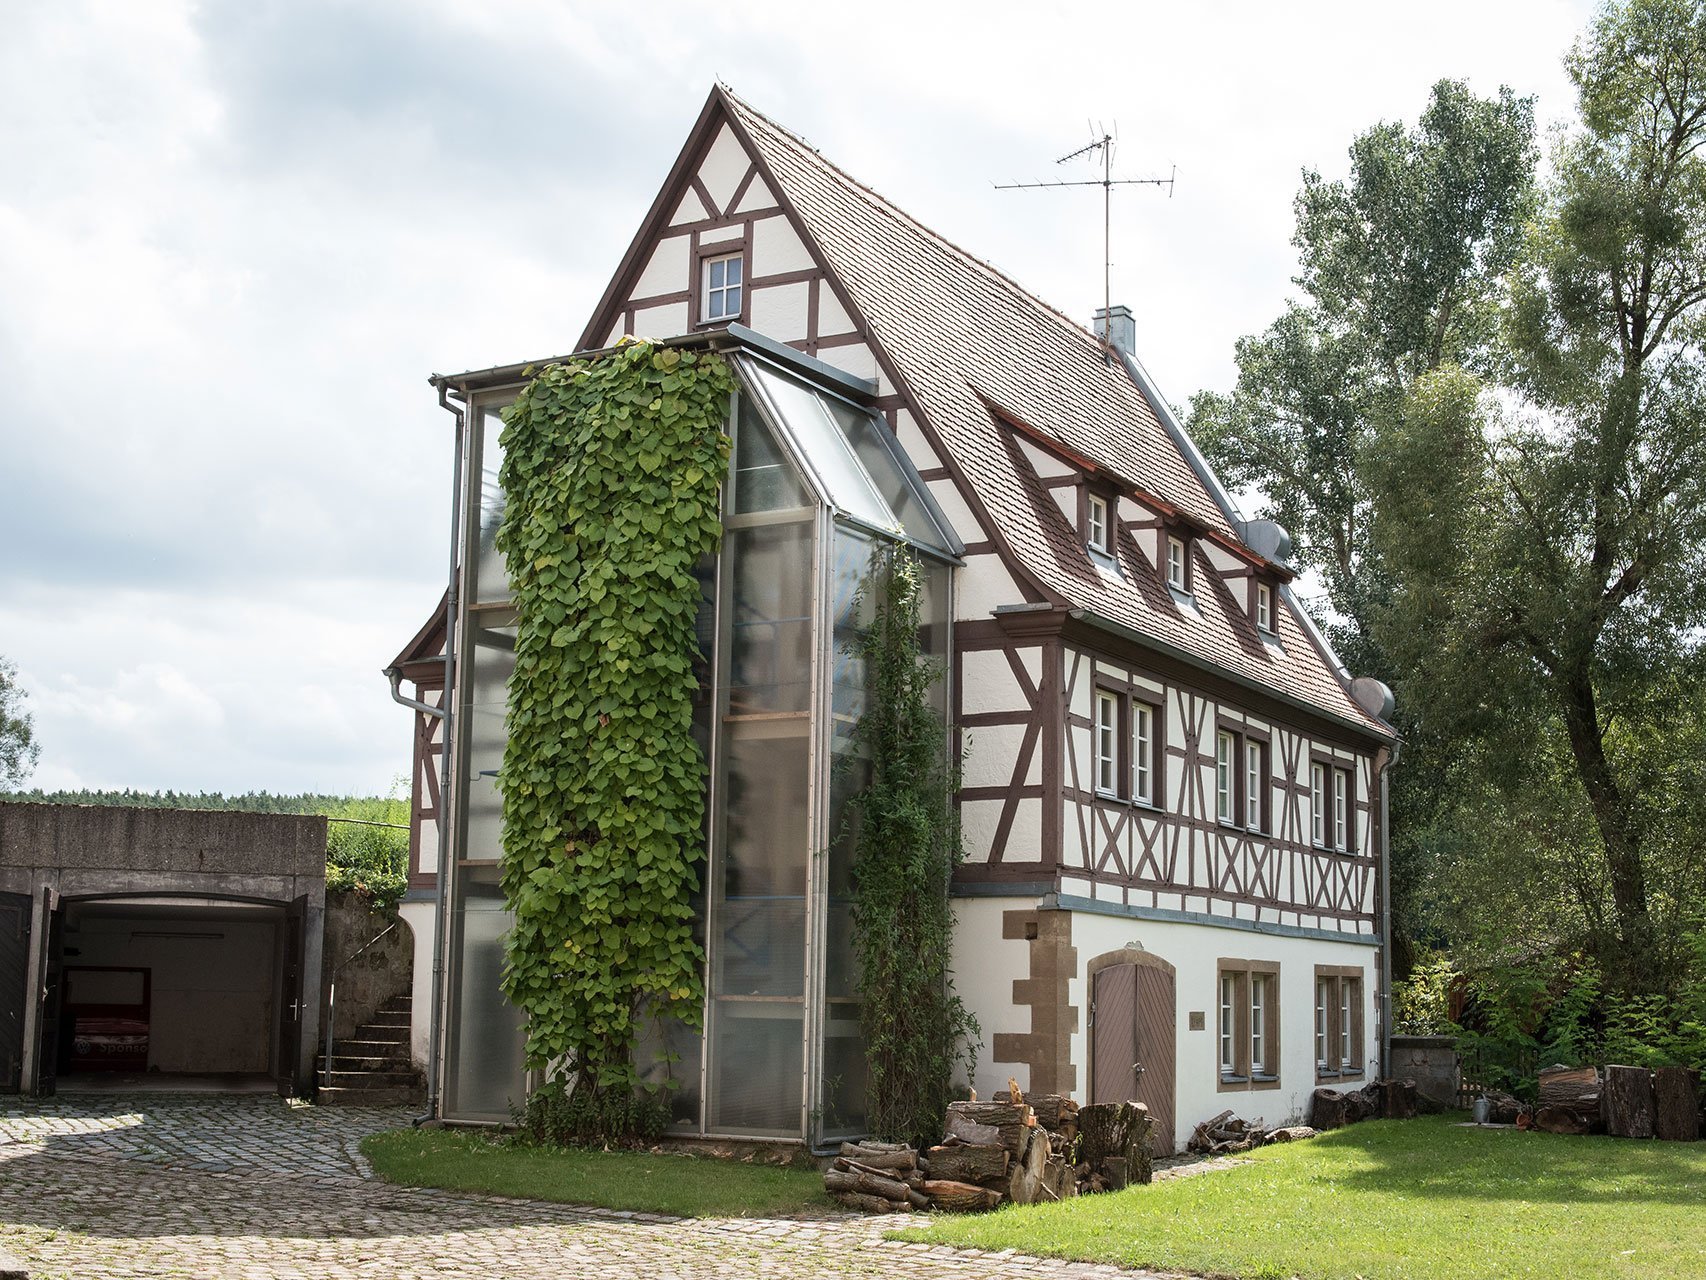 Ein hübsches Fachwerkhaus mit Grünanlage - an einer Seite wächst Efeu bis fast zum Dach